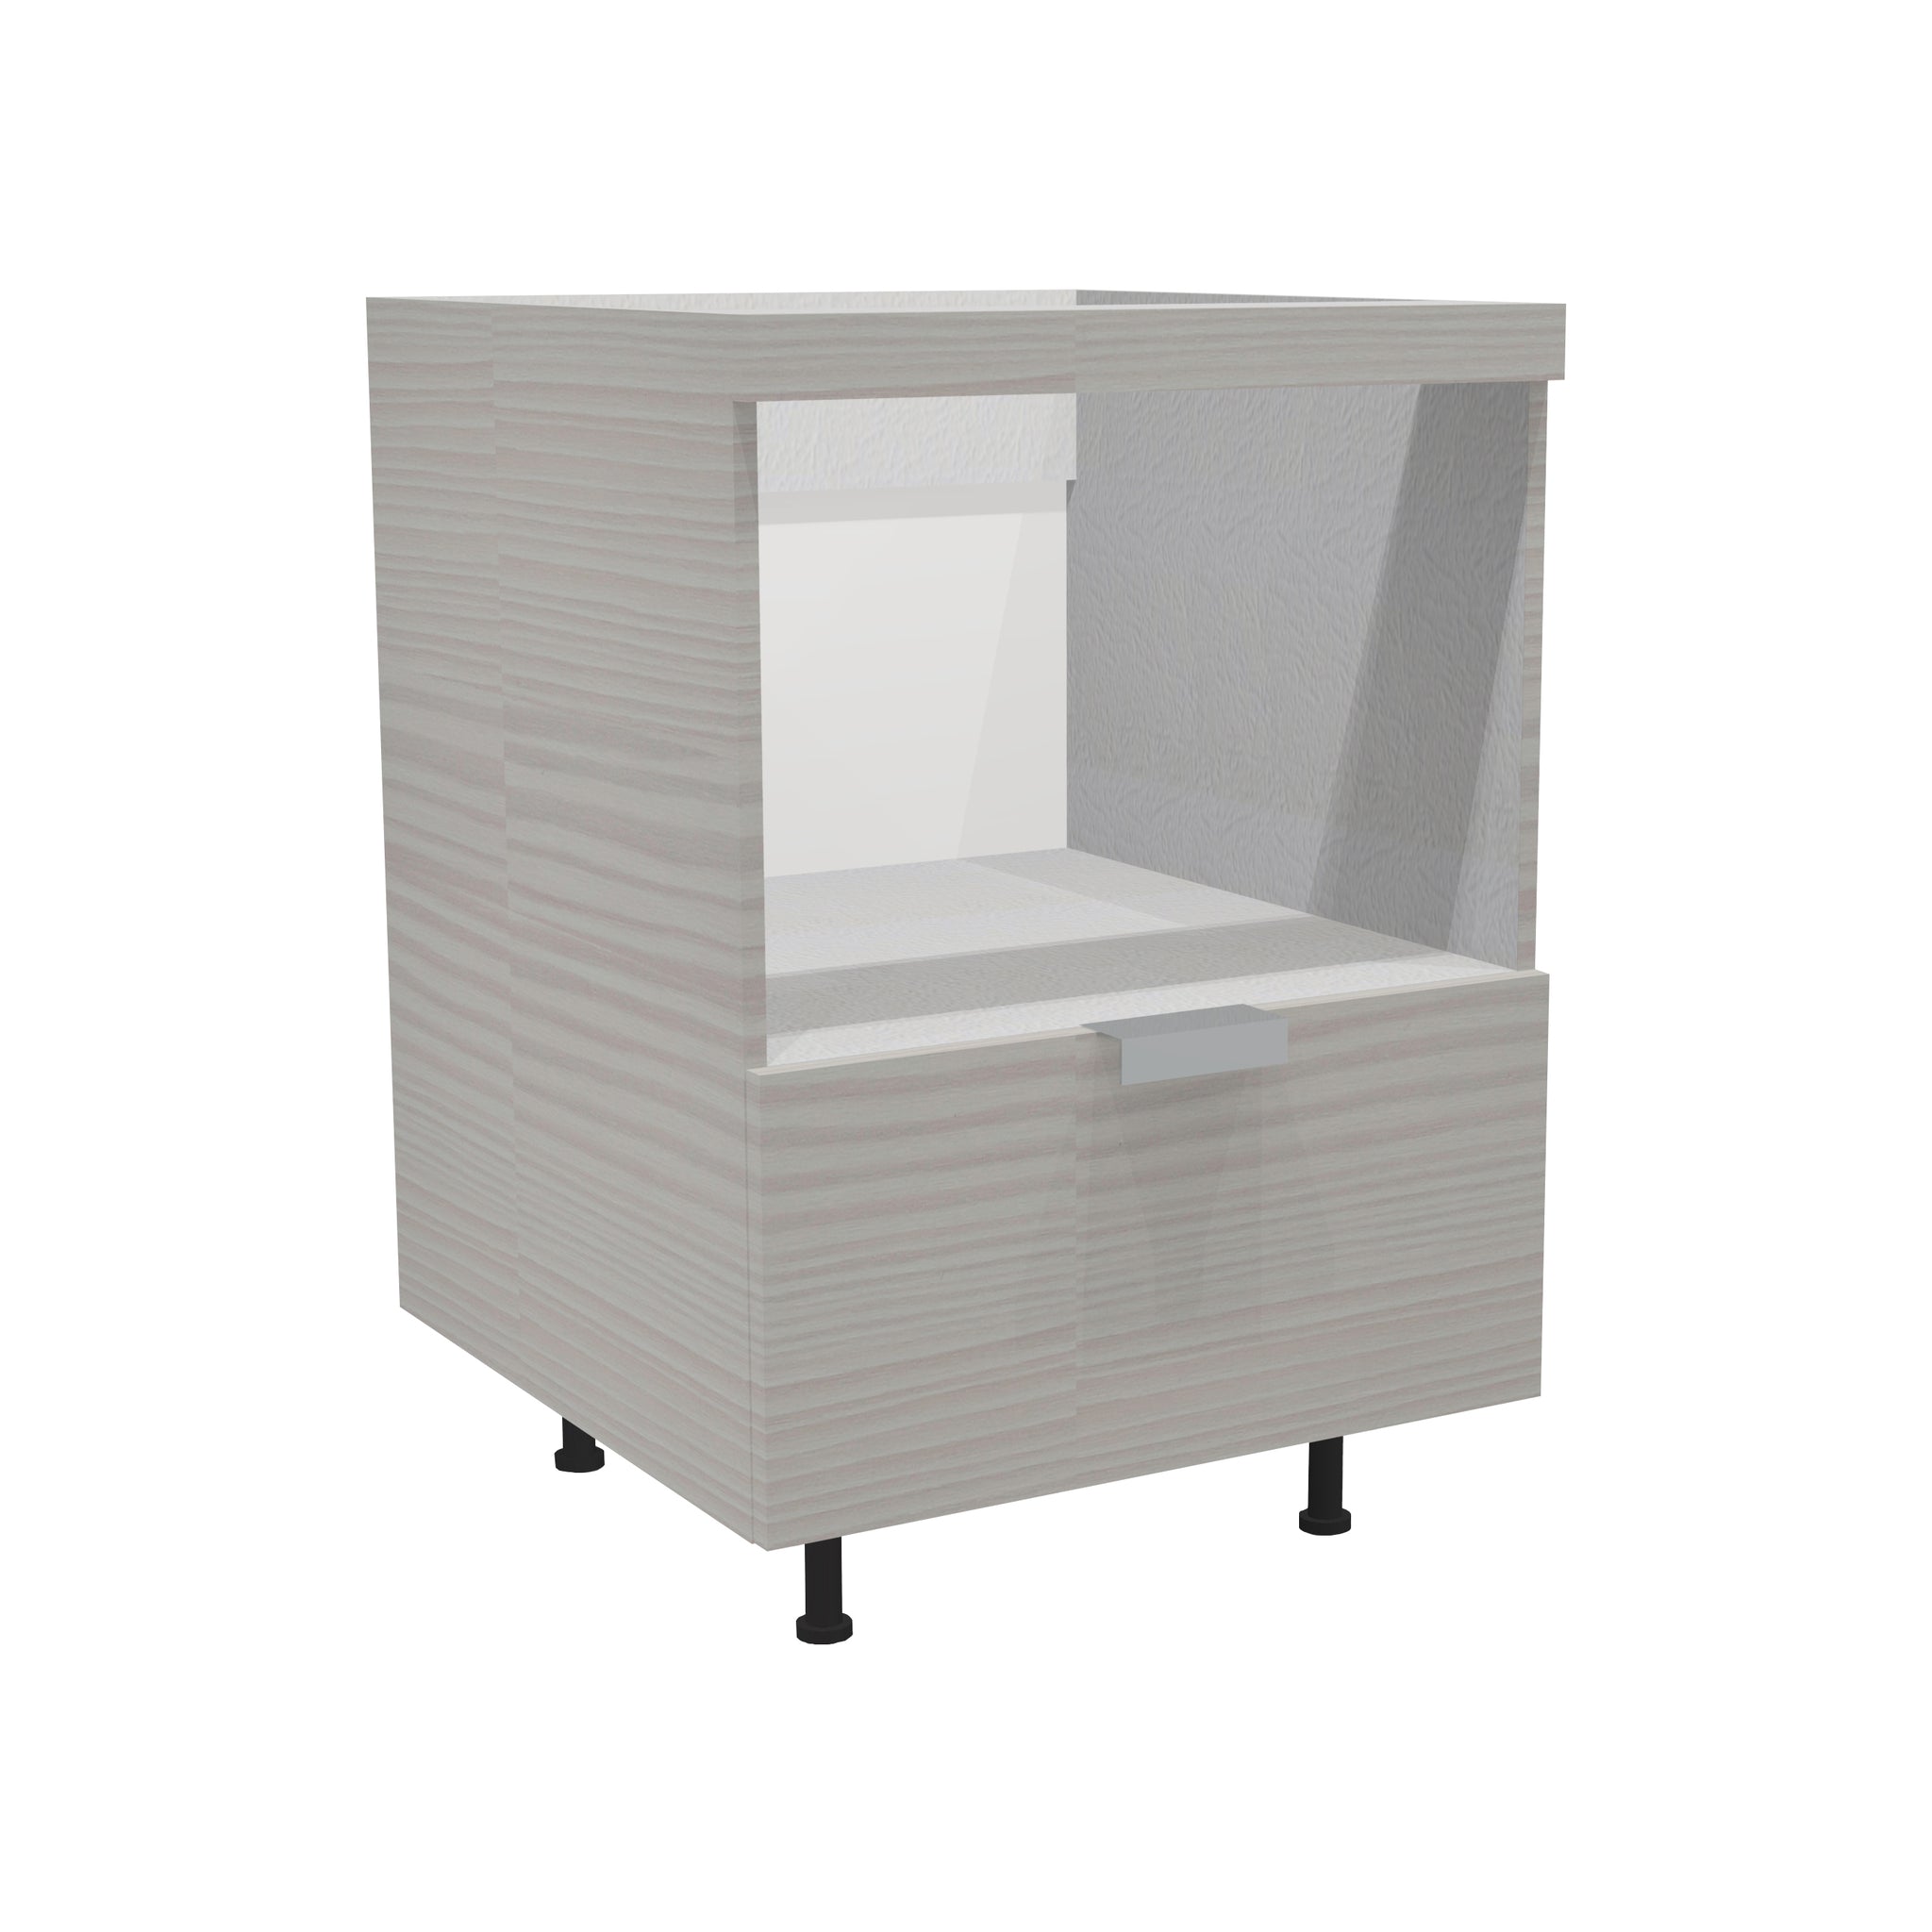 RTA - Pale Pine - Base Microwave Cabinet | 30"W x 34.5"H x 24"D